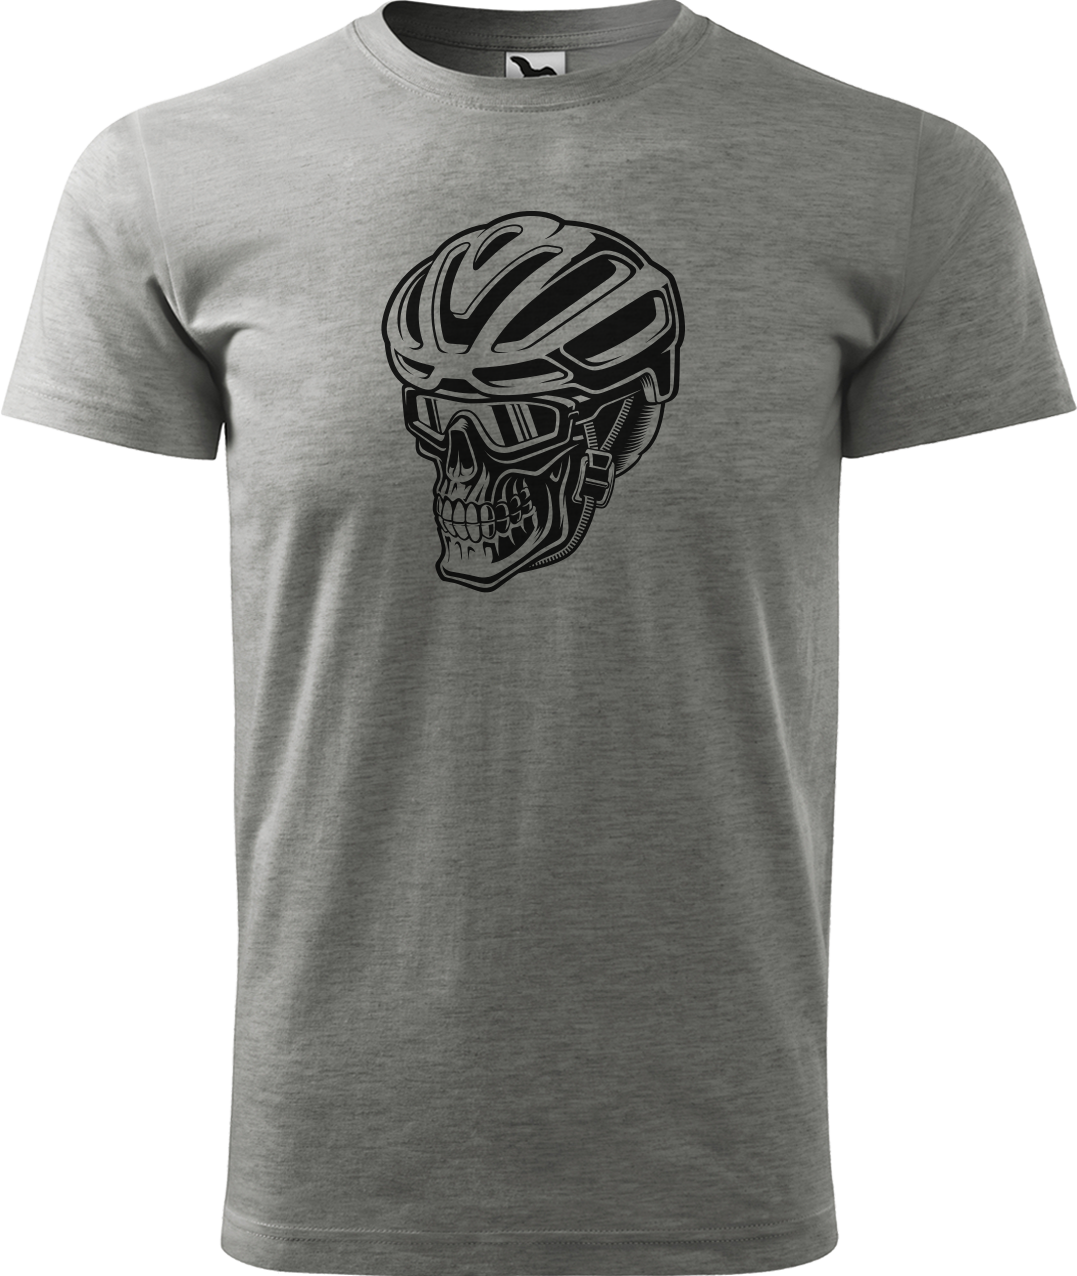 Pánské tričko pro cyklistu - Lebka v helmě Velikost: S, Barva: Tmavě šedý melír (12)